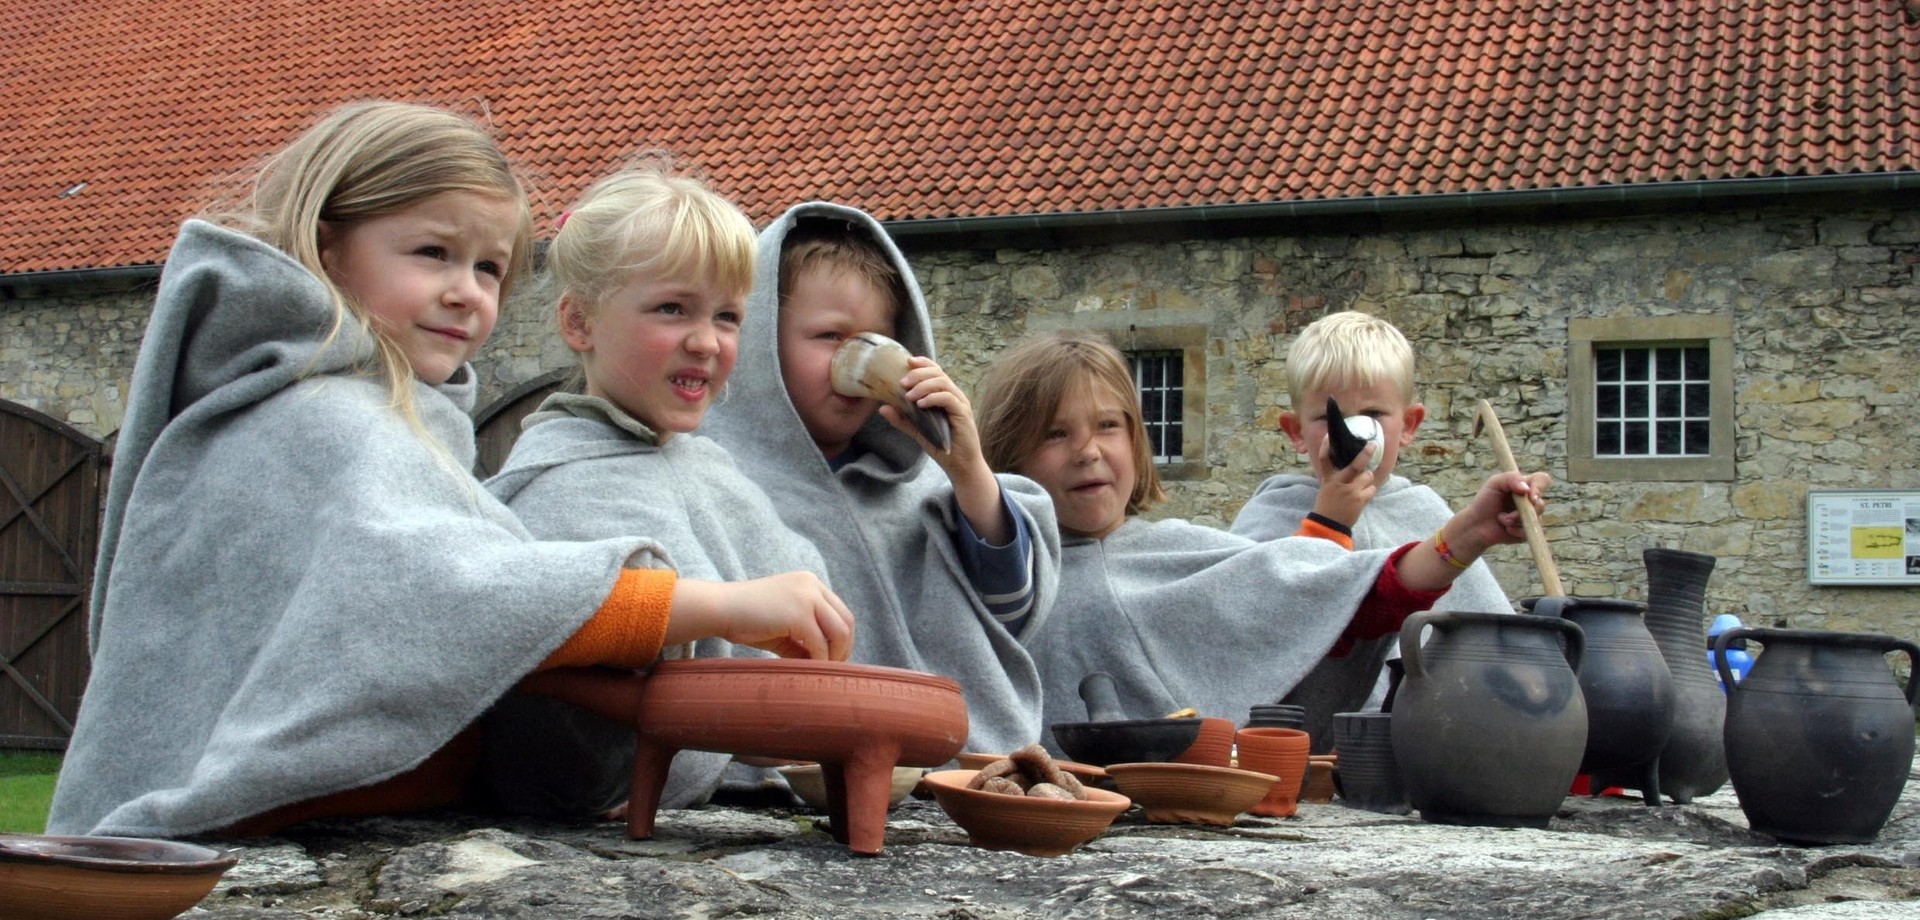 Kinder in grauen Umhängen sitzen an einem Steinblock. Vor ihnen stehen verschiedene Tongefäße, in denen sie rühren. Zwei der Kinder trinken aus Trinkhörnern.